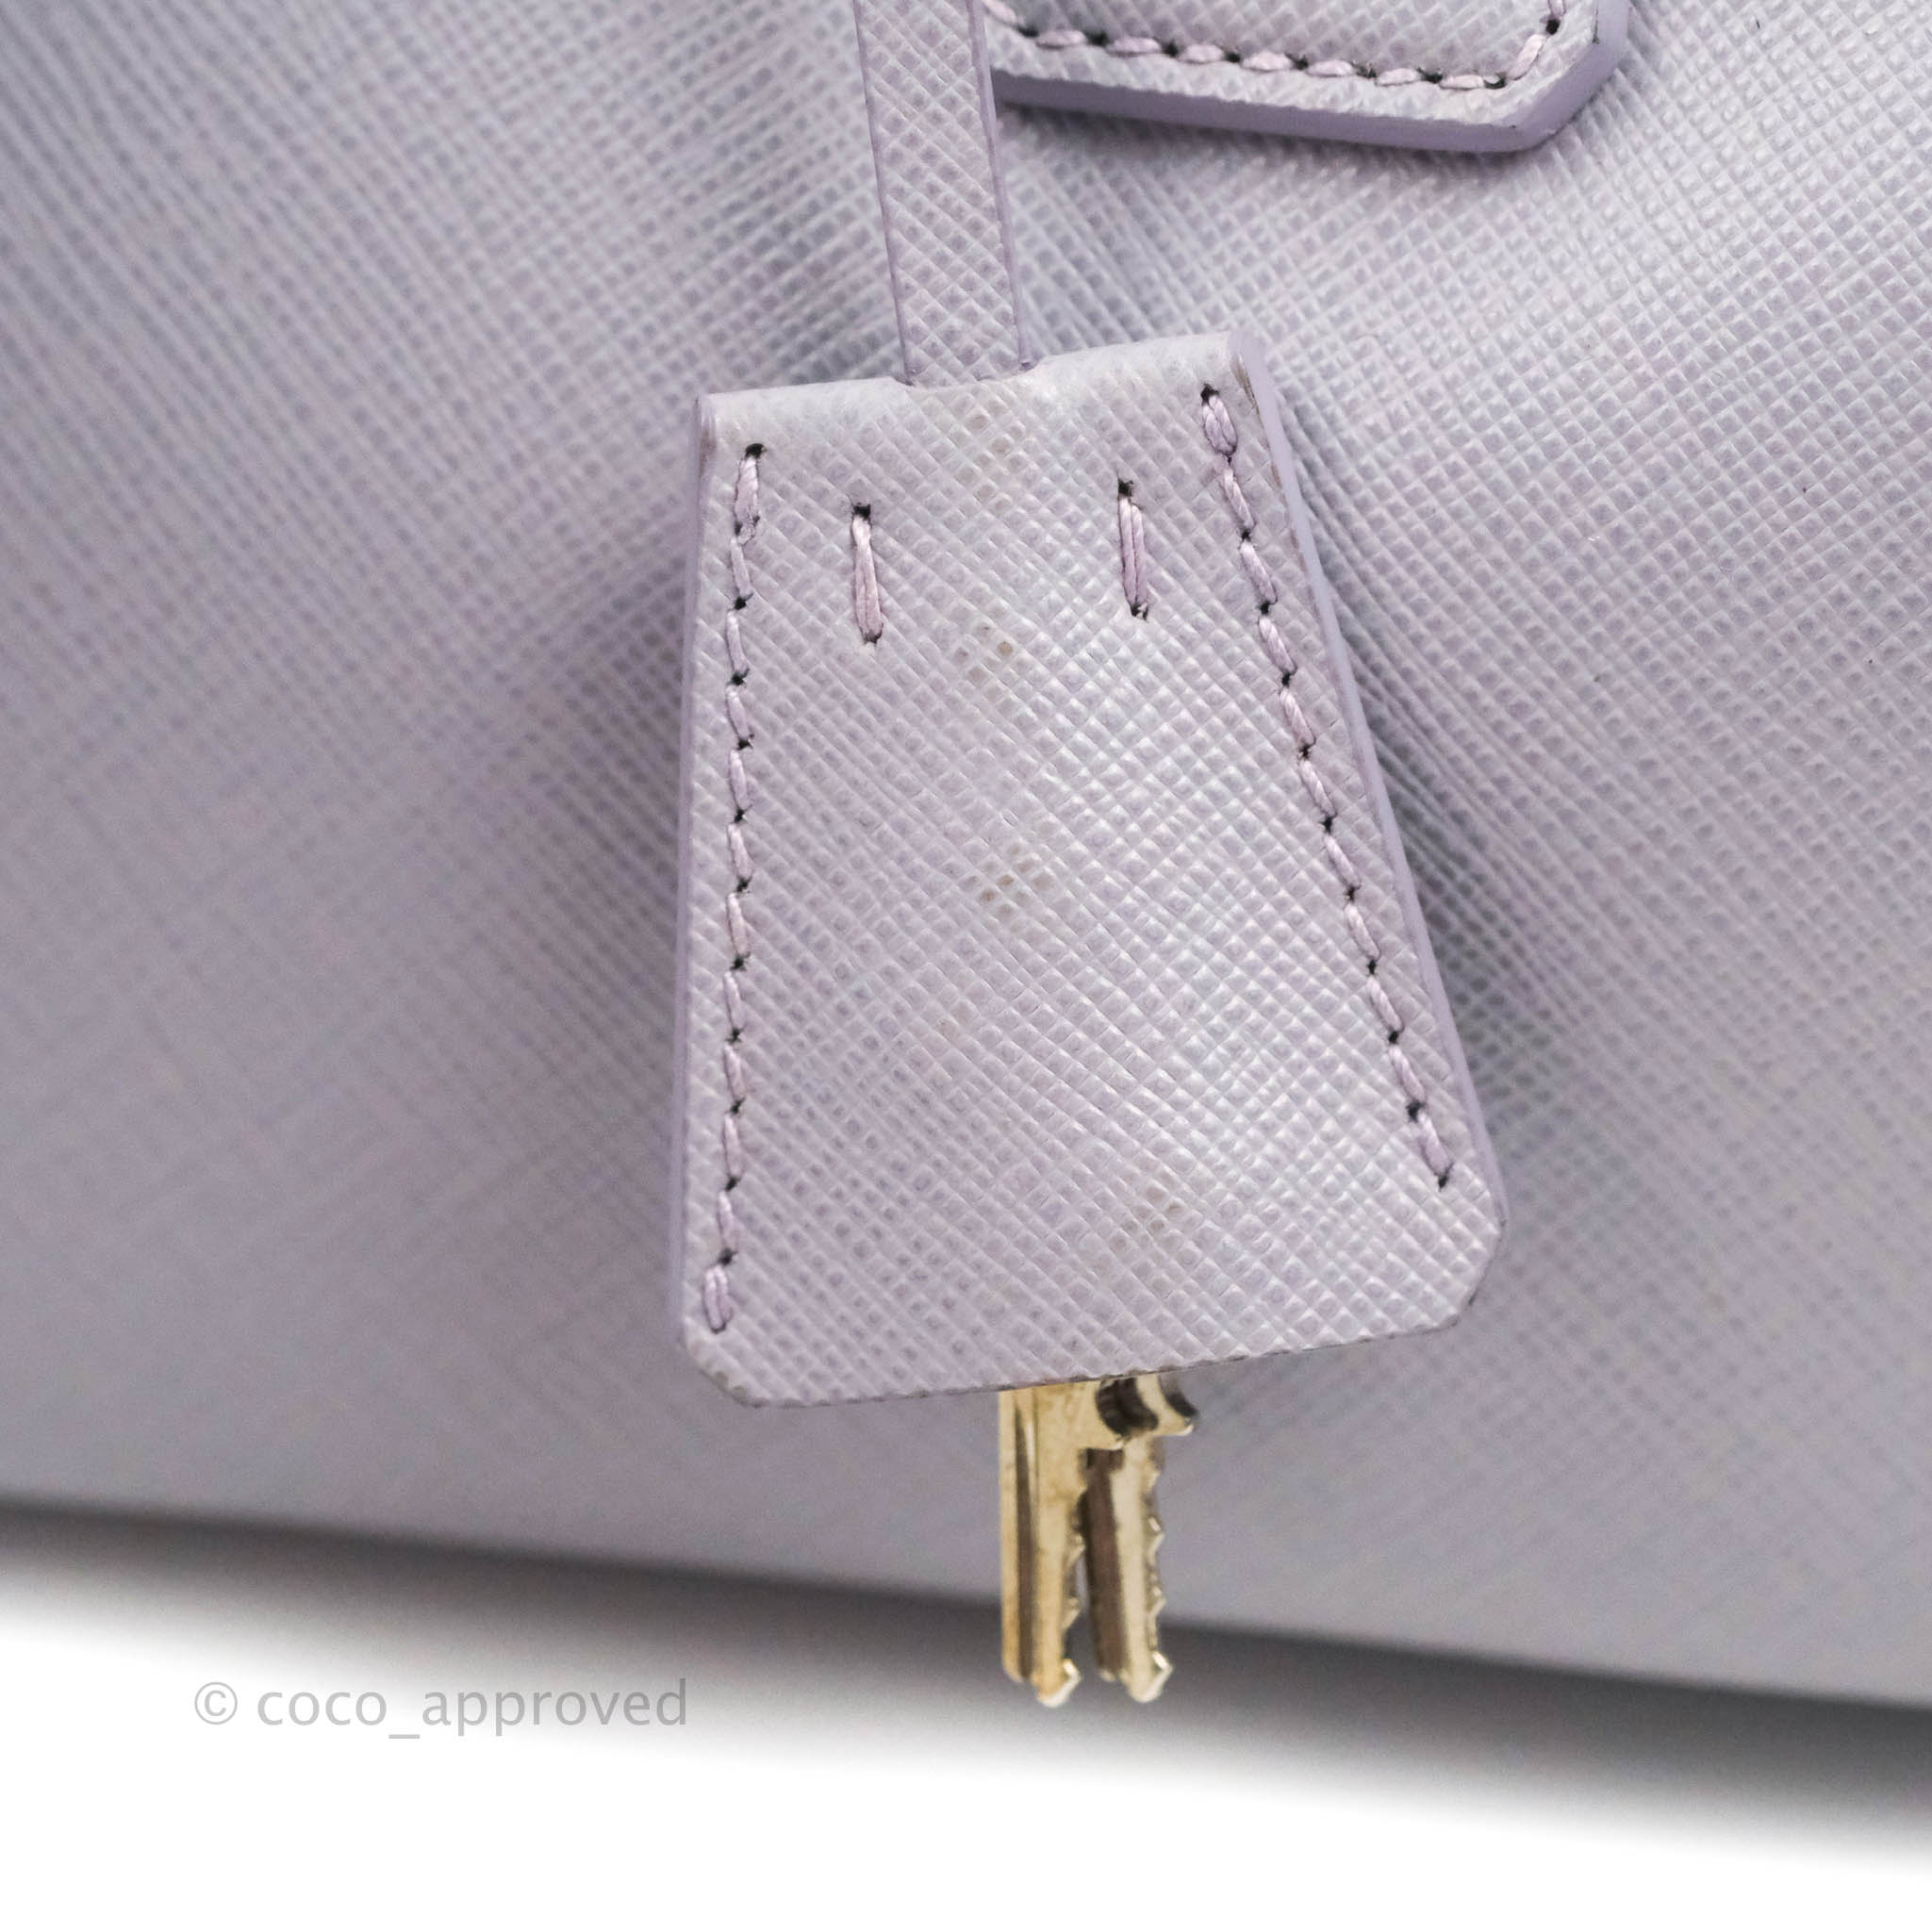 Prada Lilac Lux Convertible Boston Saffiano Leather Mini – Coco Approved  Studio